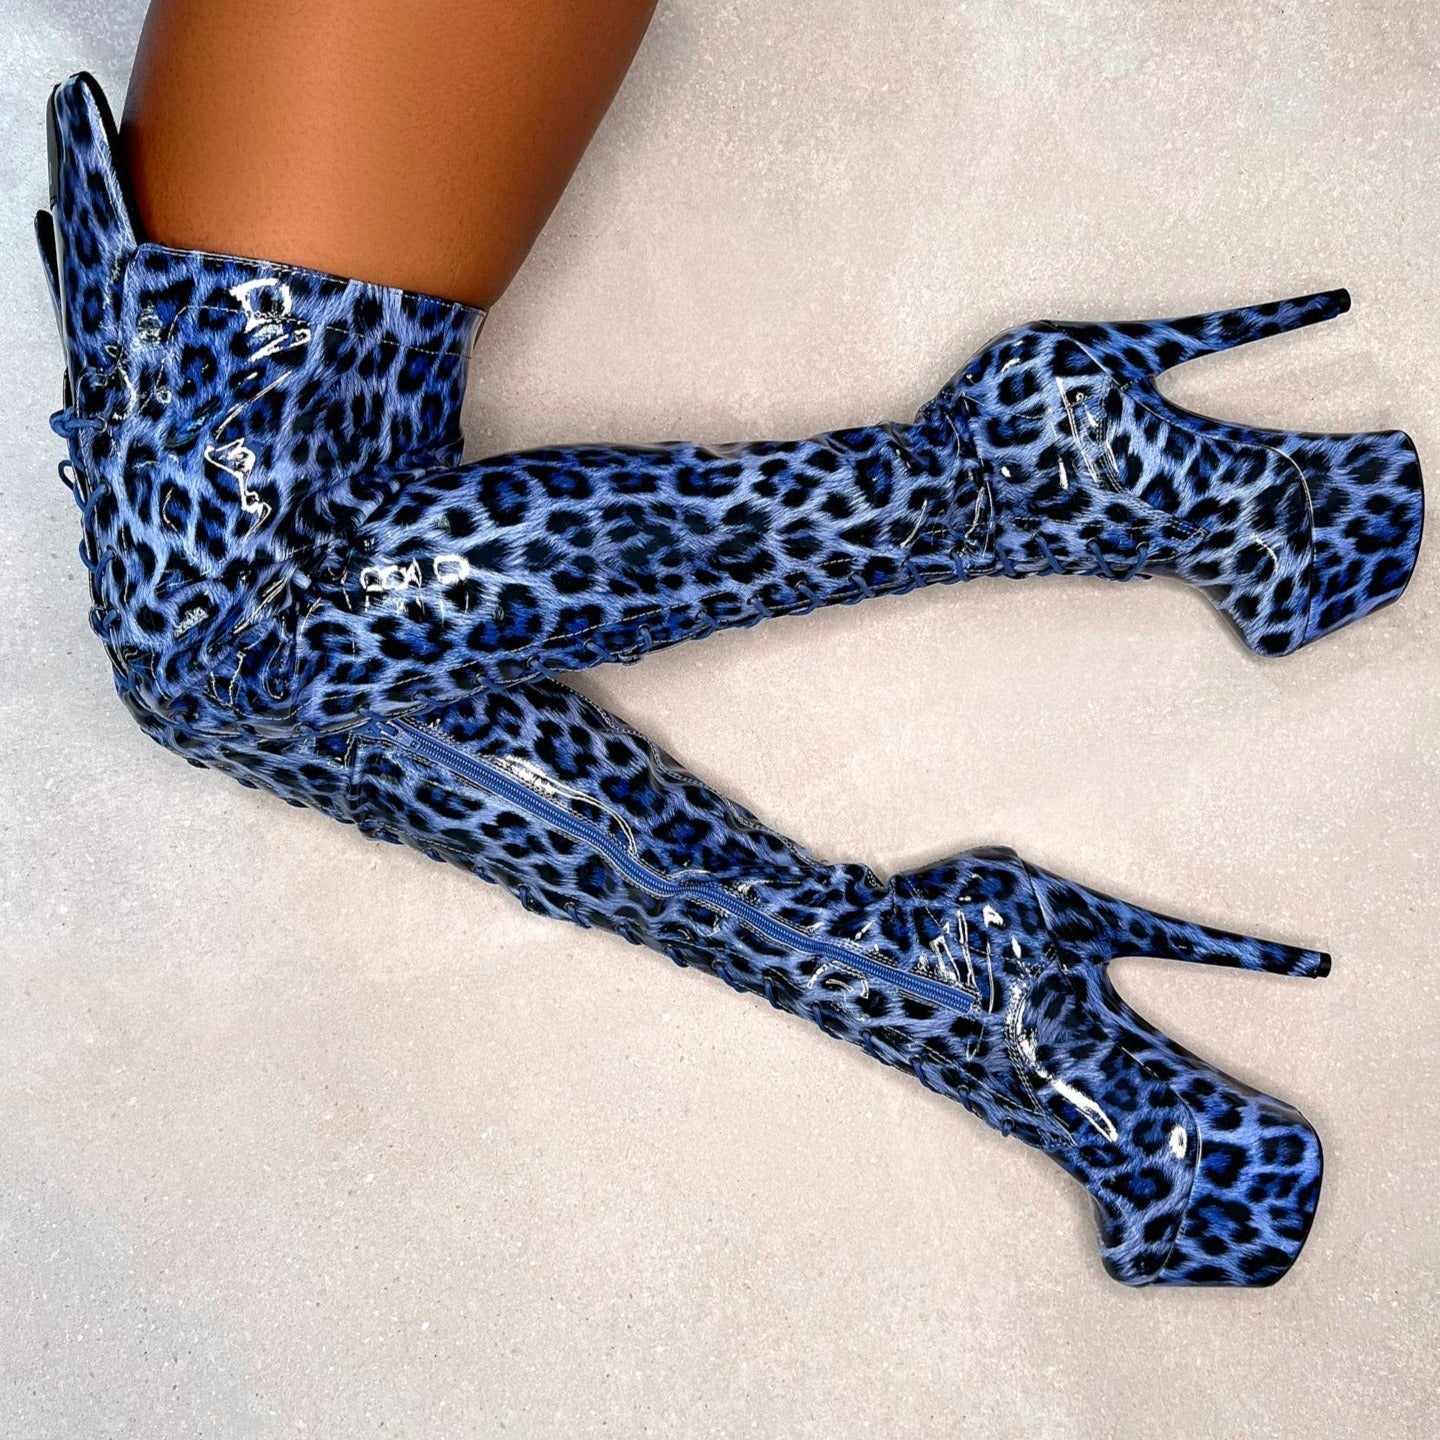 Blue Leopard Thigh High - 7 INCH, stripper shoe, stripper heel, pole heel, not a pleaser, platform, dancer, pole dance, floor work